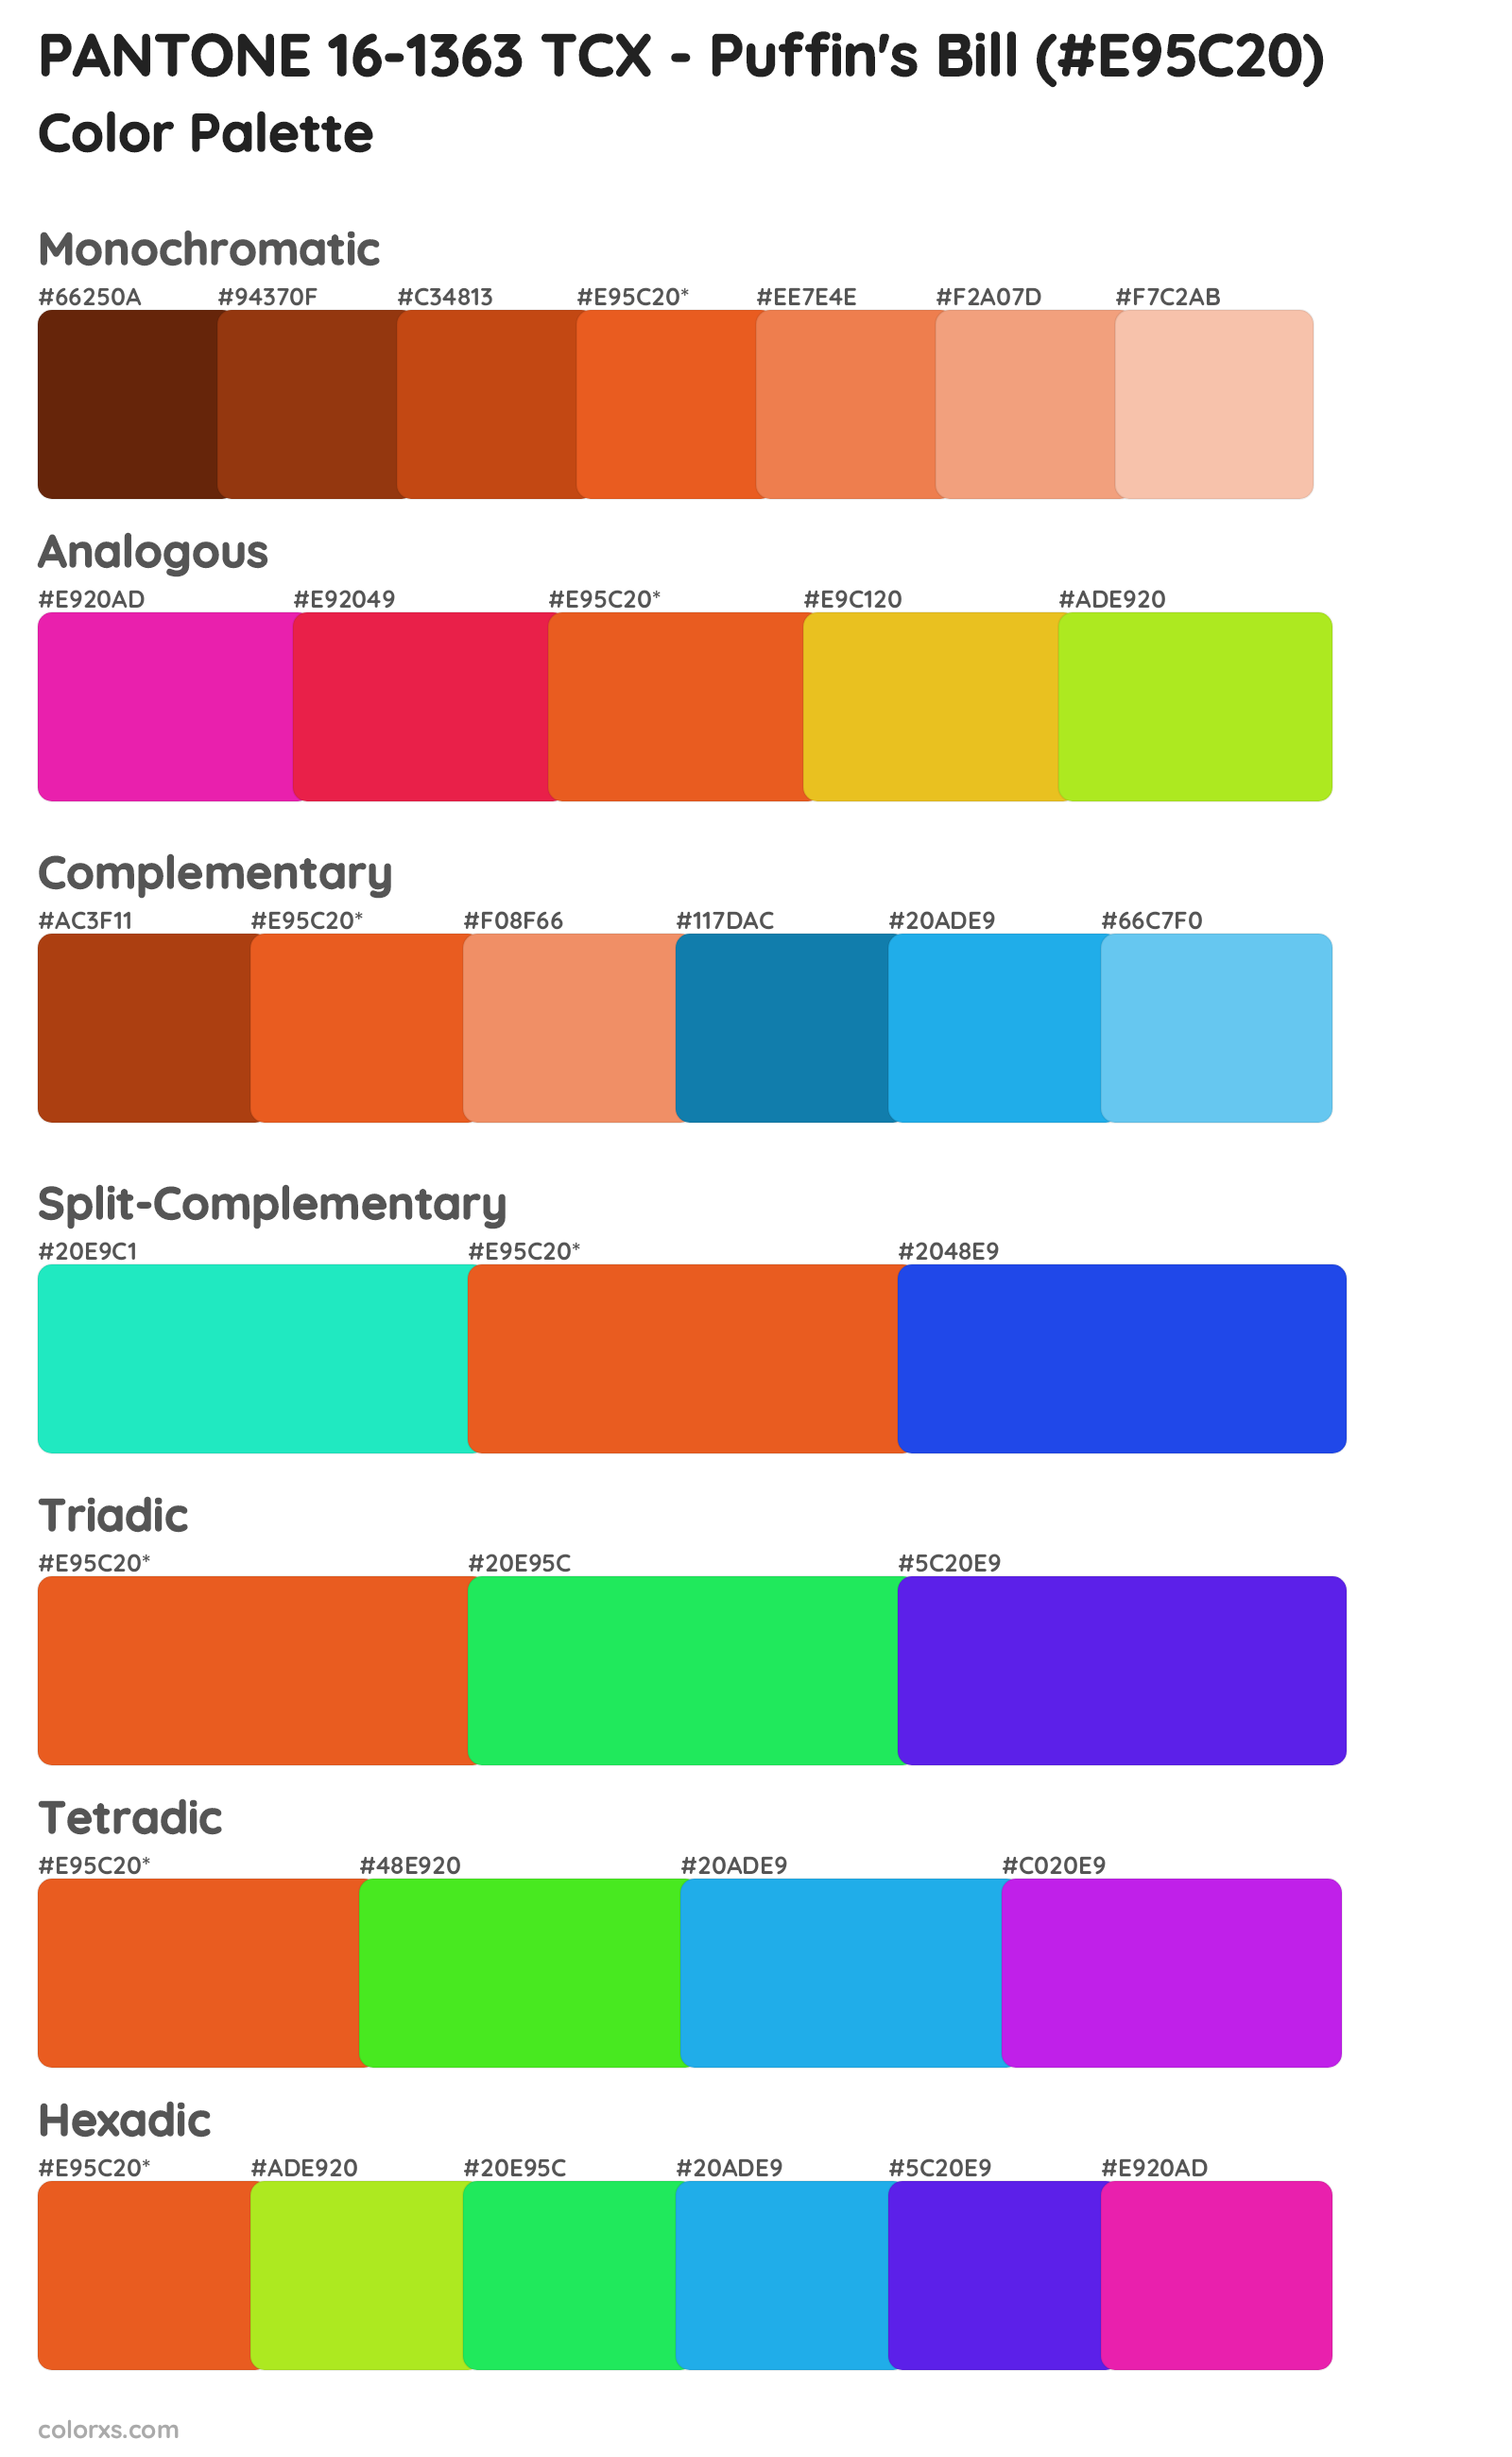 PANTONE 16-1363 TCX - Puffin's Bill Color Scheme Palettes